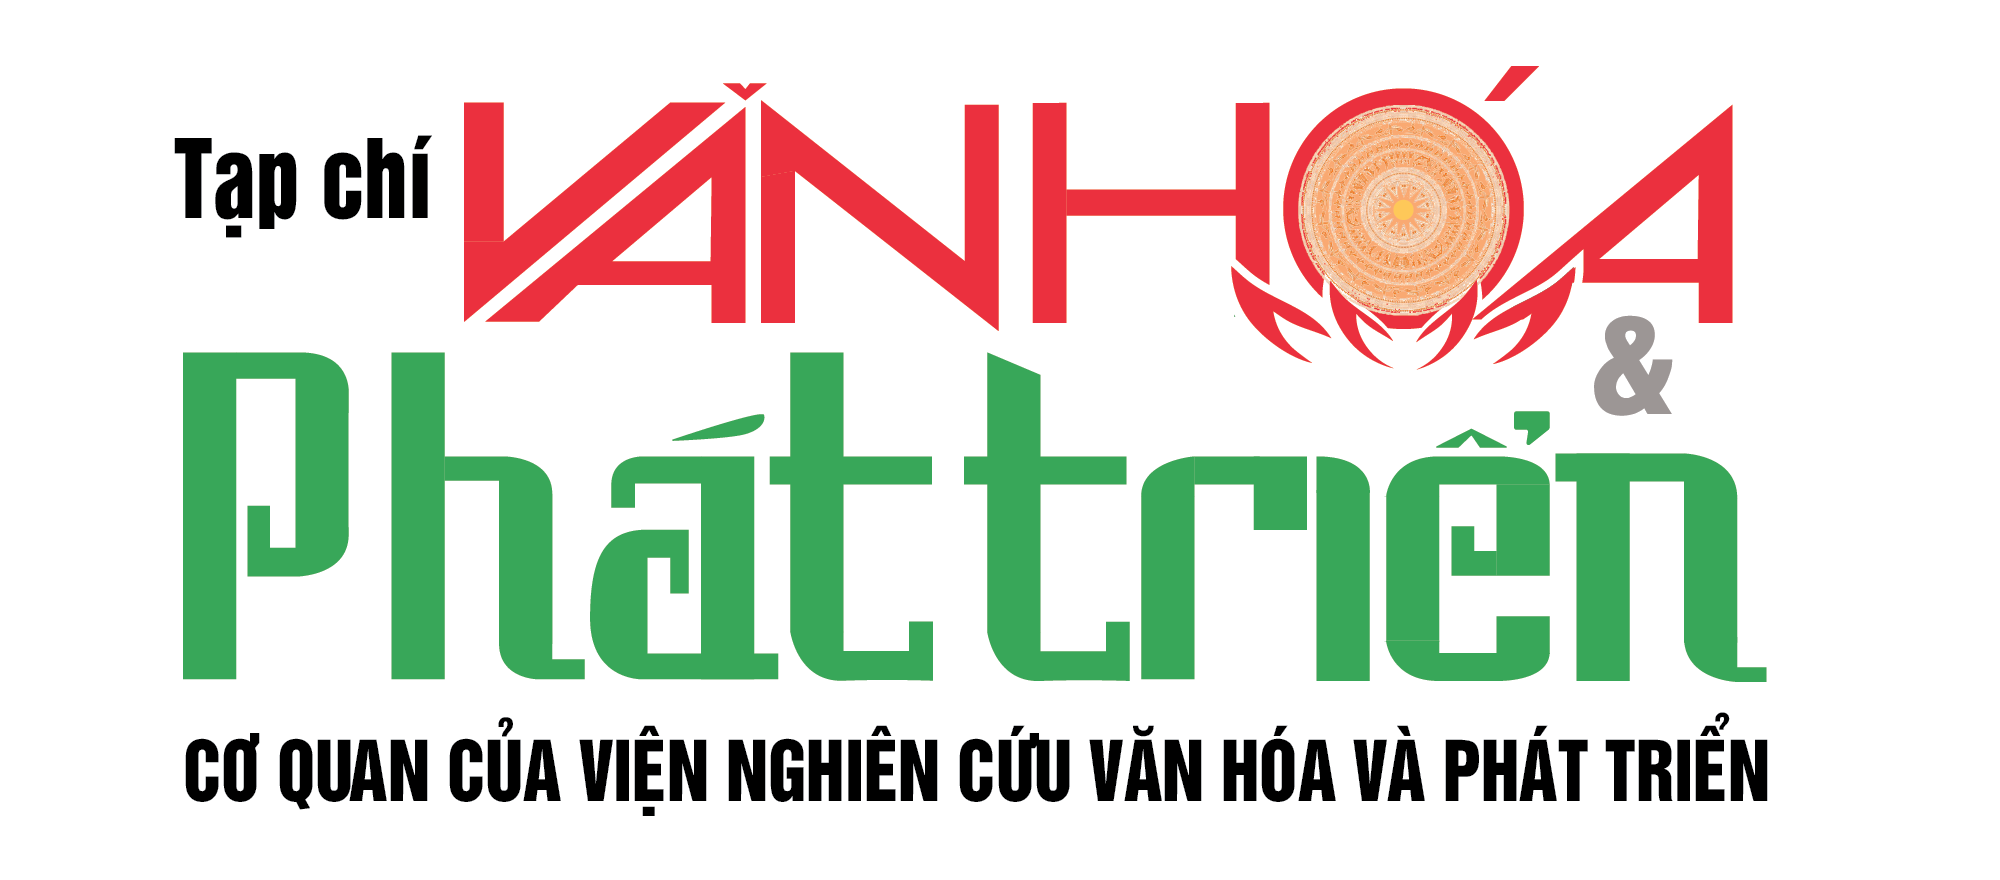 logo-van-hoa-phat-trien-1620826774-1667643464.png